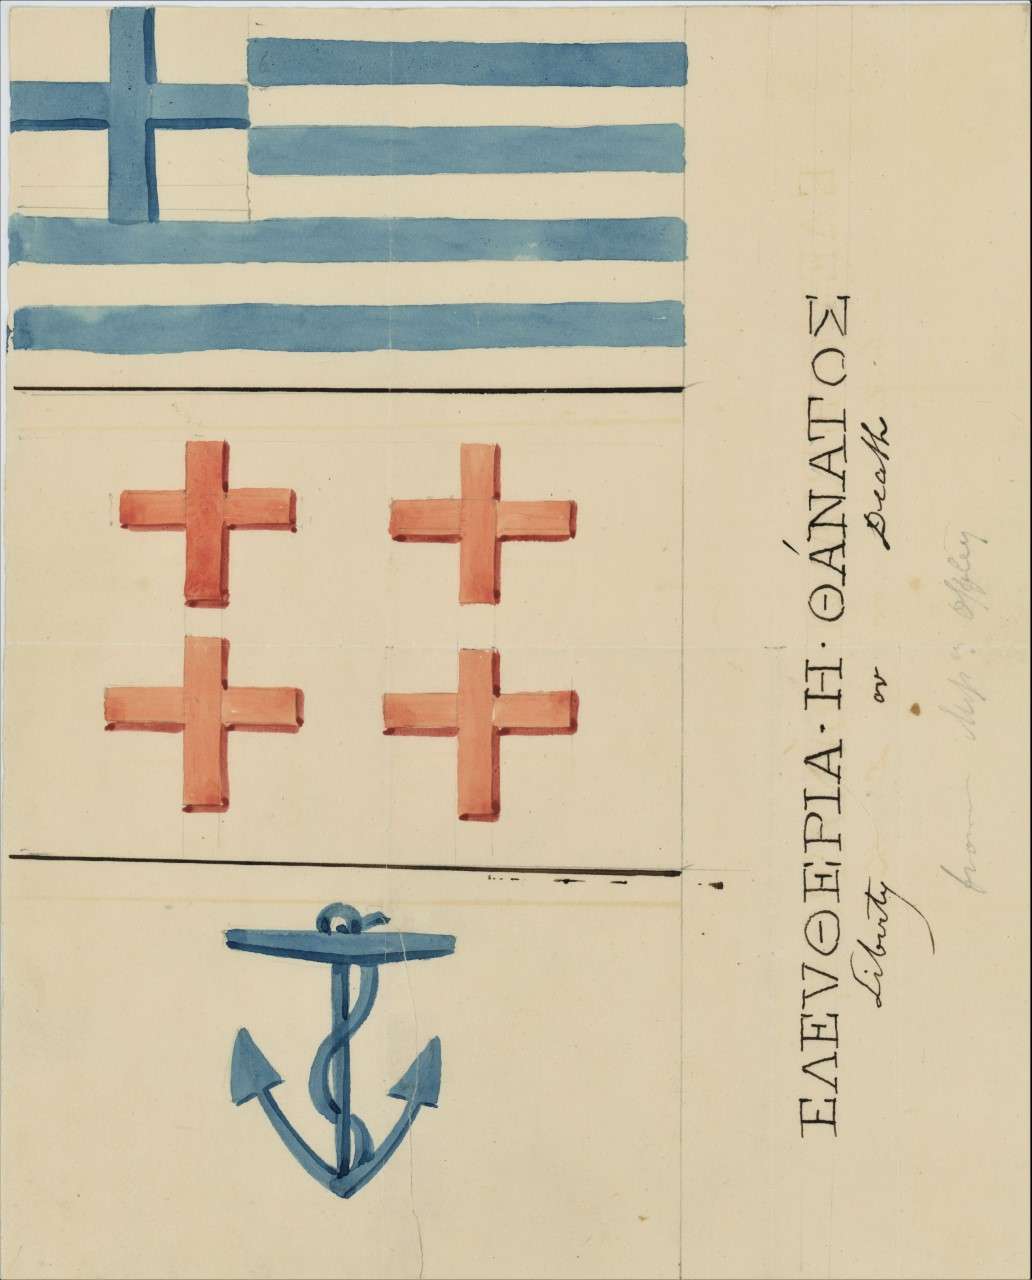 Η ελληνική σημαία με σινική μελάνη σε μια επιστολή του 1824